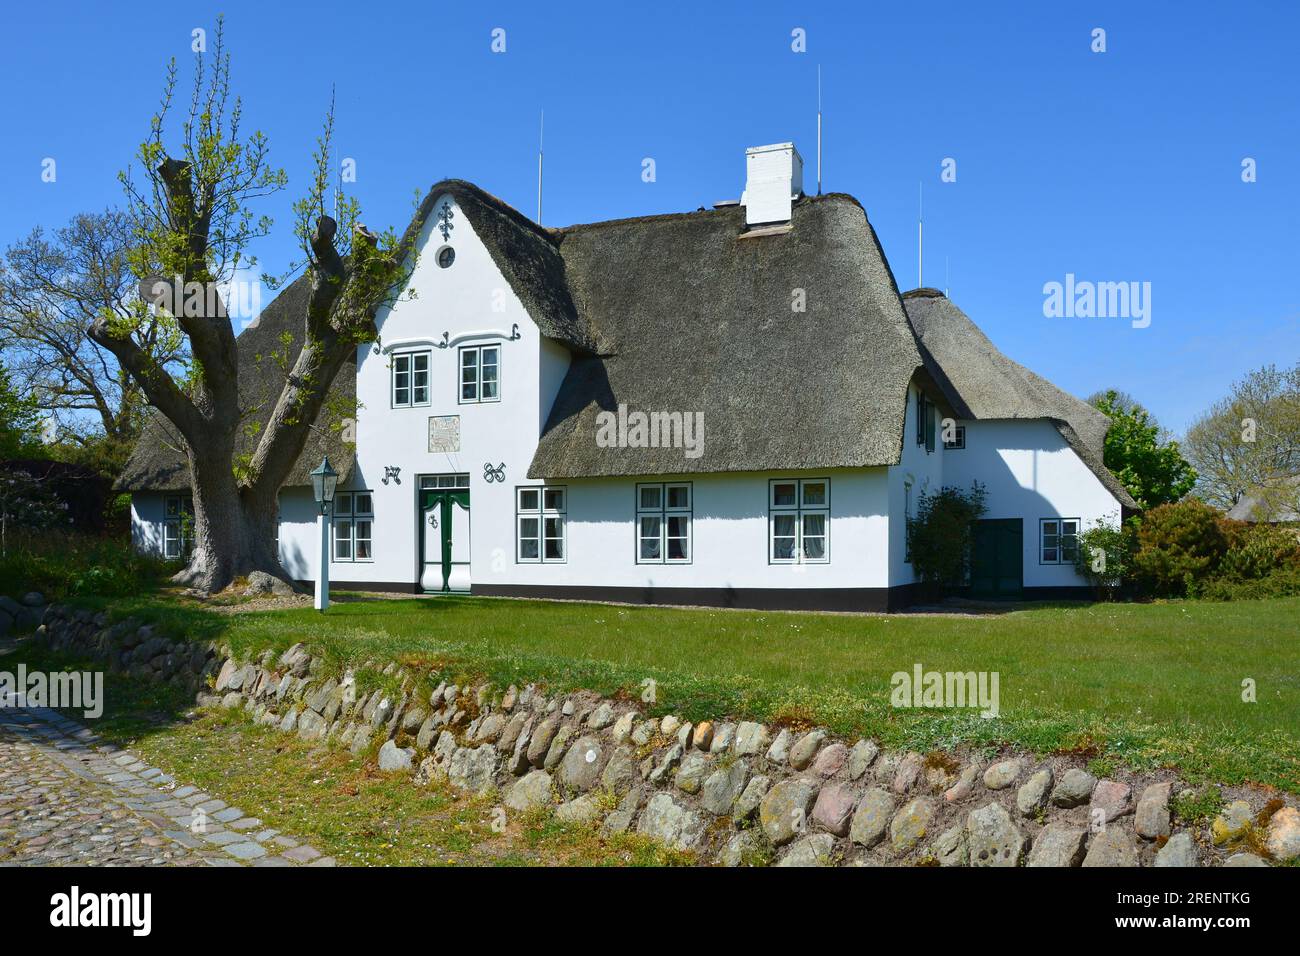 Friesenhaus/friesisches Haus in Keitum, Sylt, Friesische Inseln, Wattenmeer, Nordsee, Schleswig-Holstein, Deutschland Stockfoto